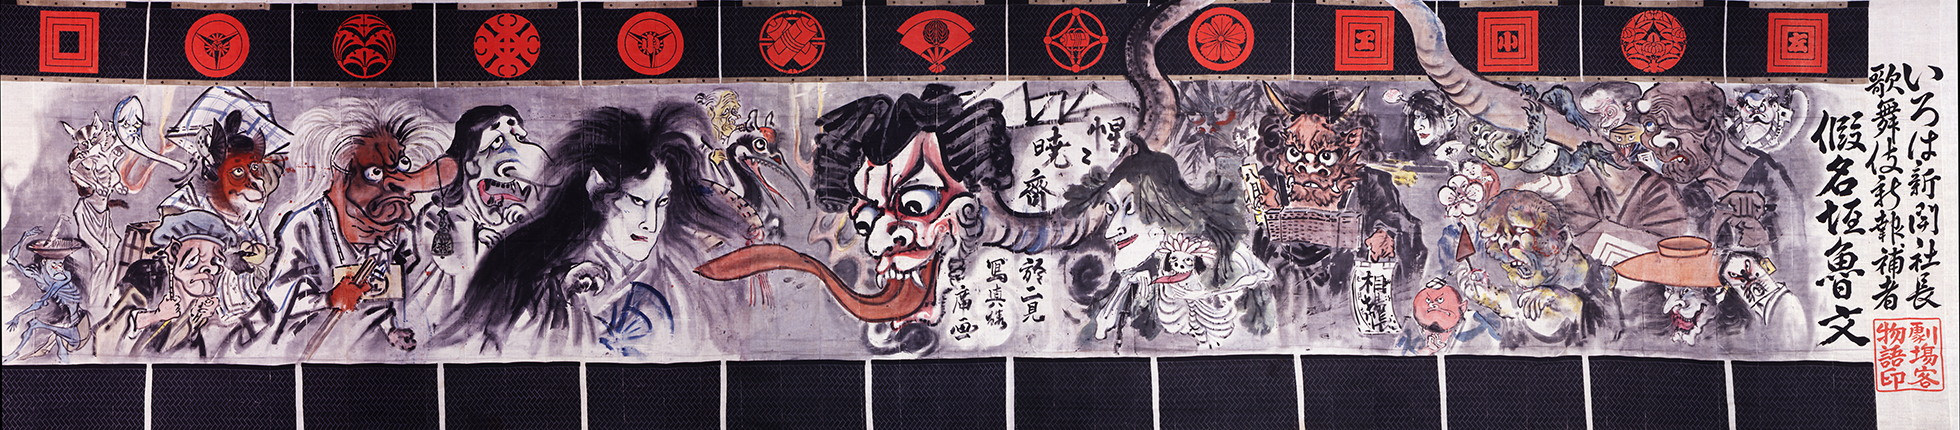 Kyosai-Kabuki-curtain-blog.jpg